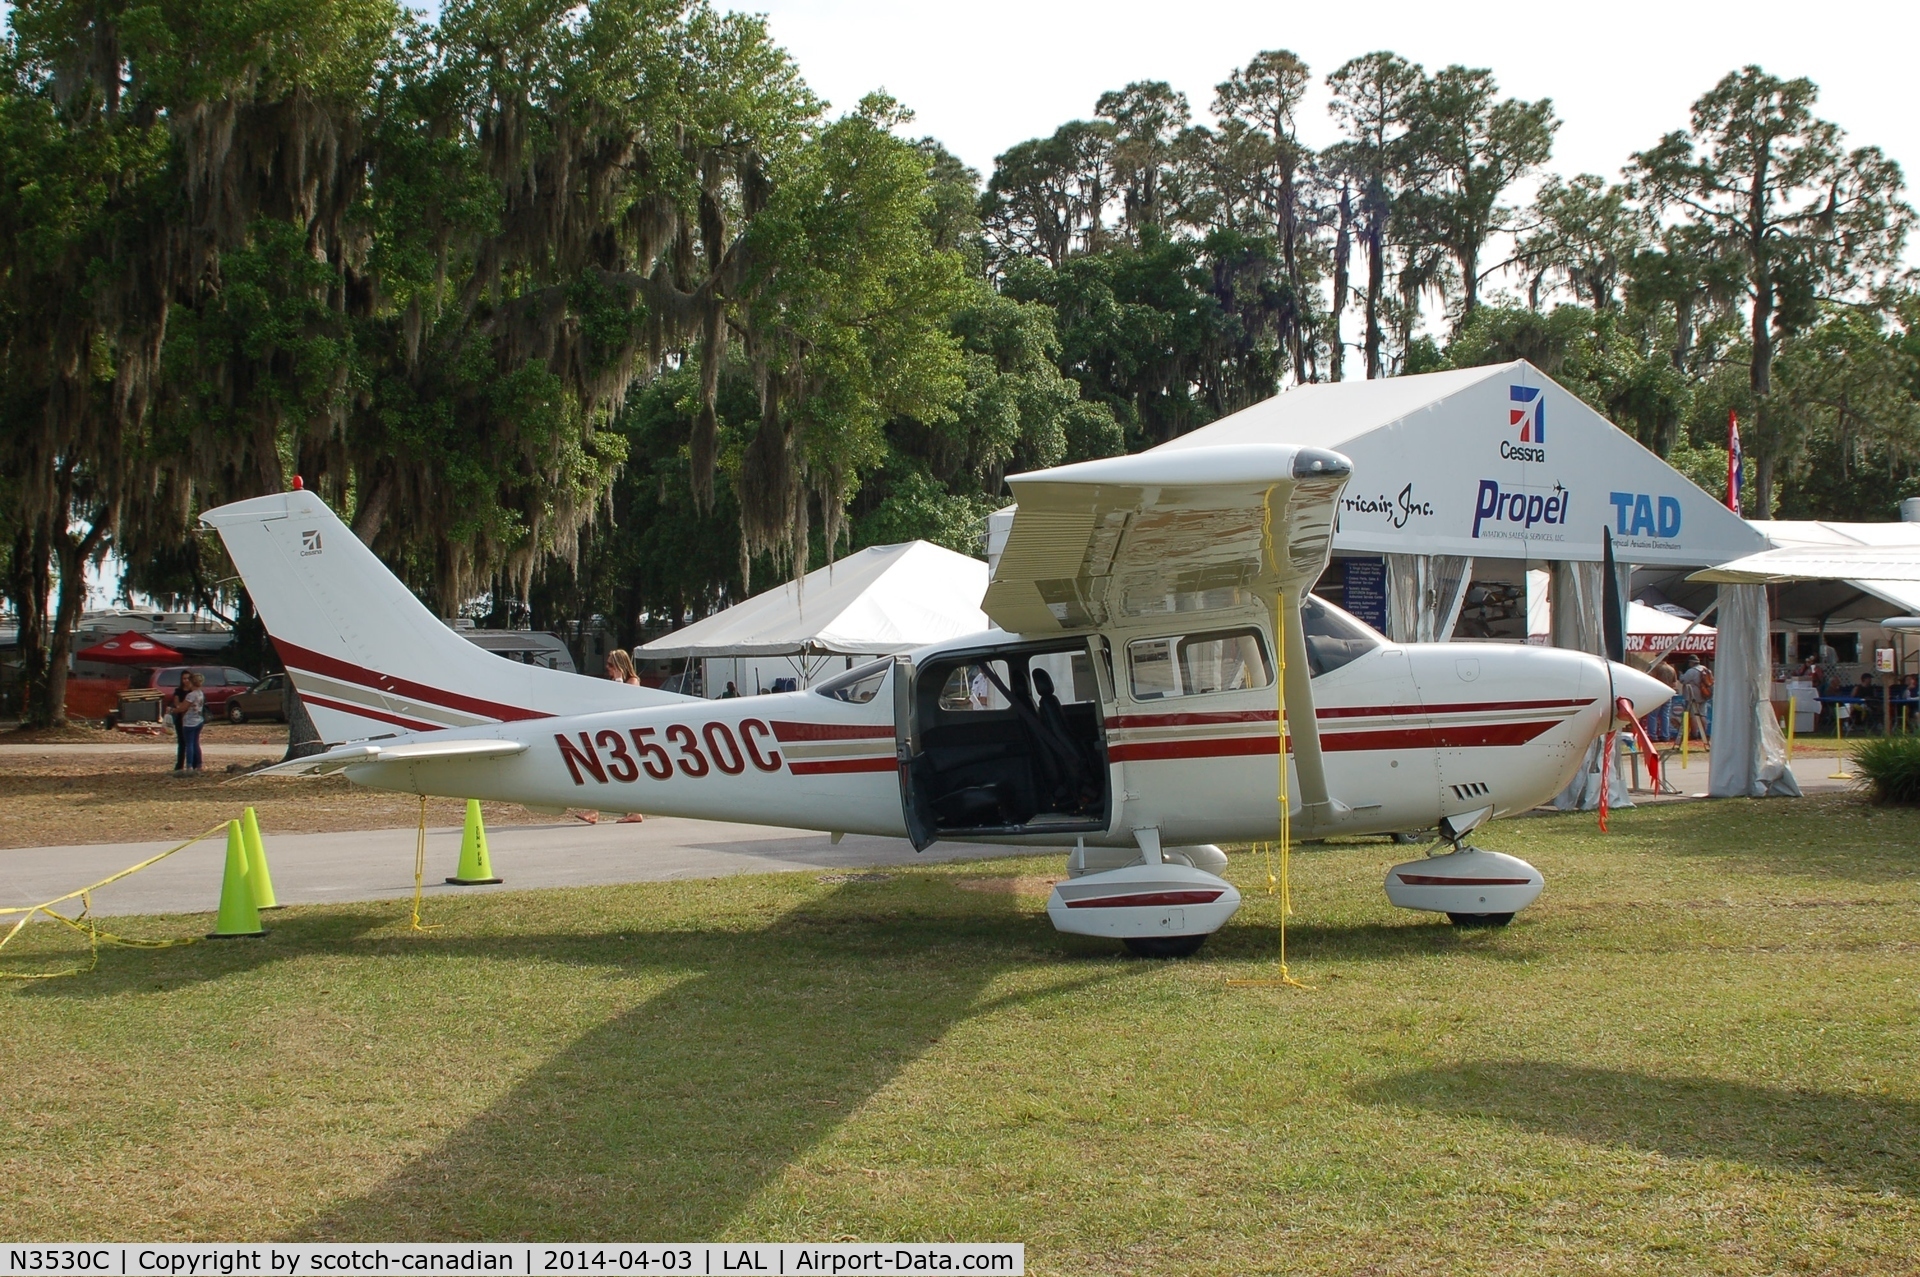 N3530C, 2001 Cessna T206H Turbo Stationair C/N T20608287, Cessna T206H, N3530C, at 2014 Sun n Fun, Lakeland Linder Regional Airport, Lakeland, FL